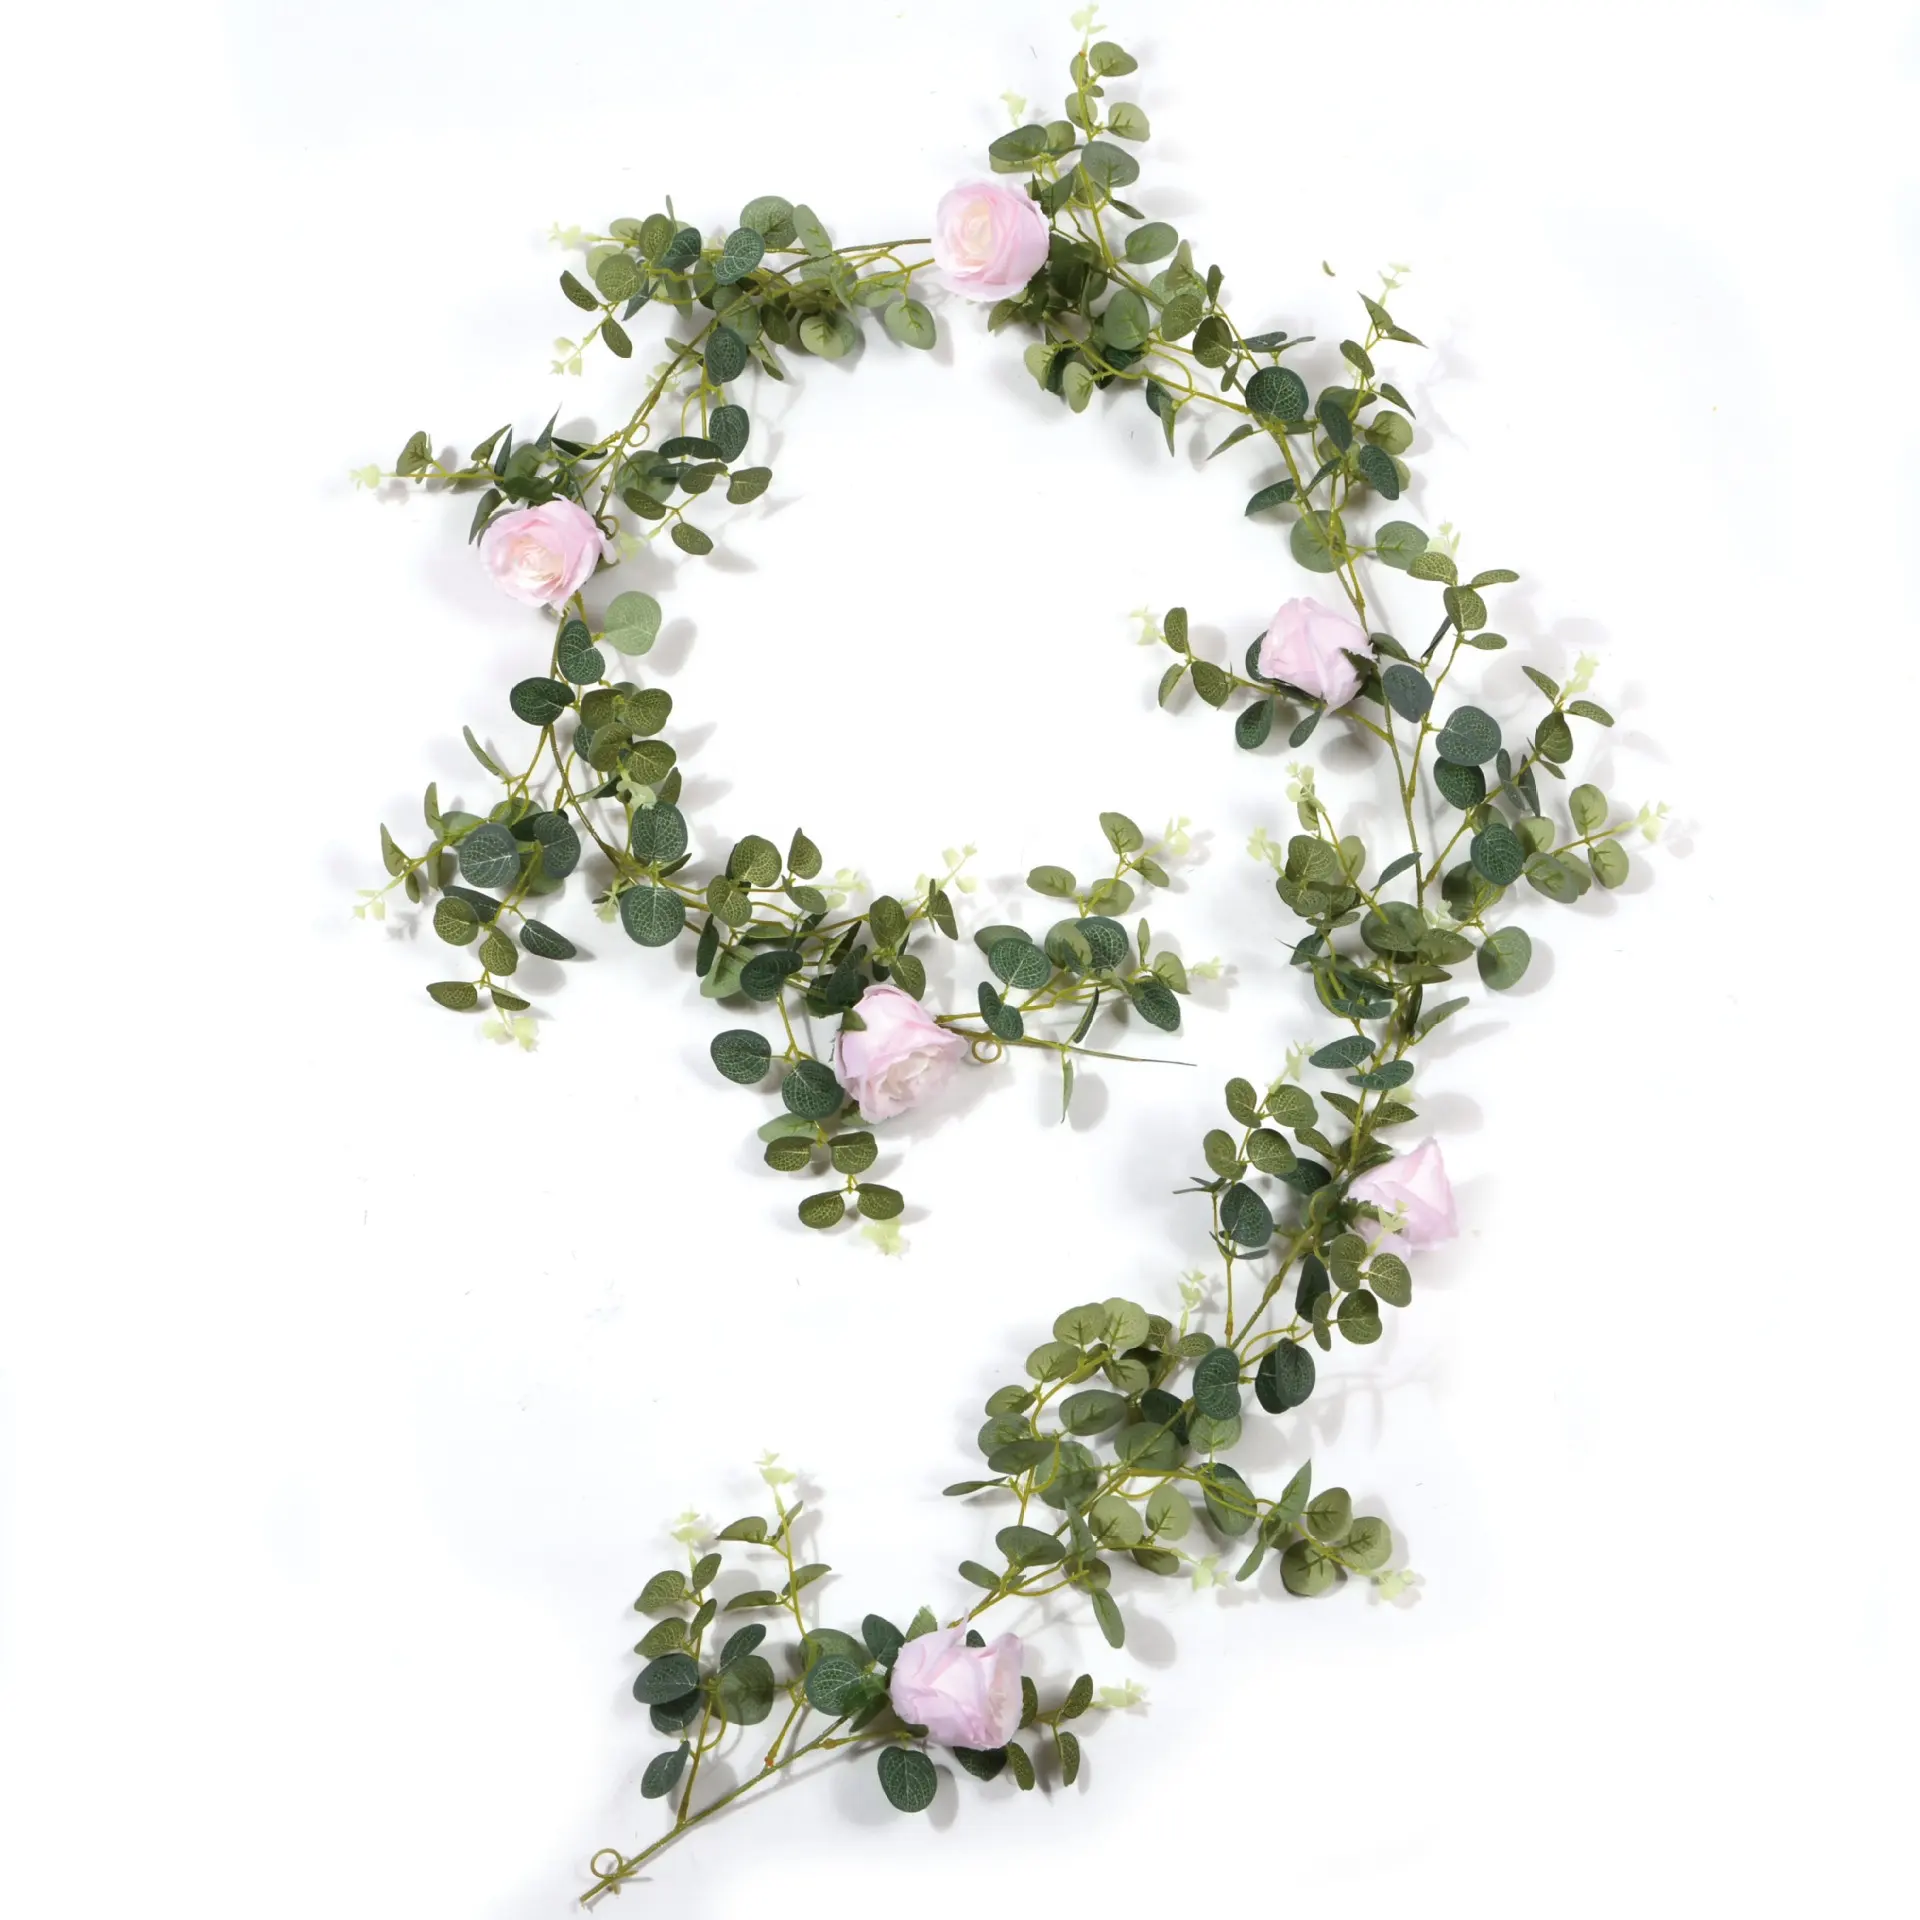 Künstliche Kamelie Rose Seide dekorative Blumen Rattan String grüne Reben hängen Hochzeits bogen Home Garland Dekorationen